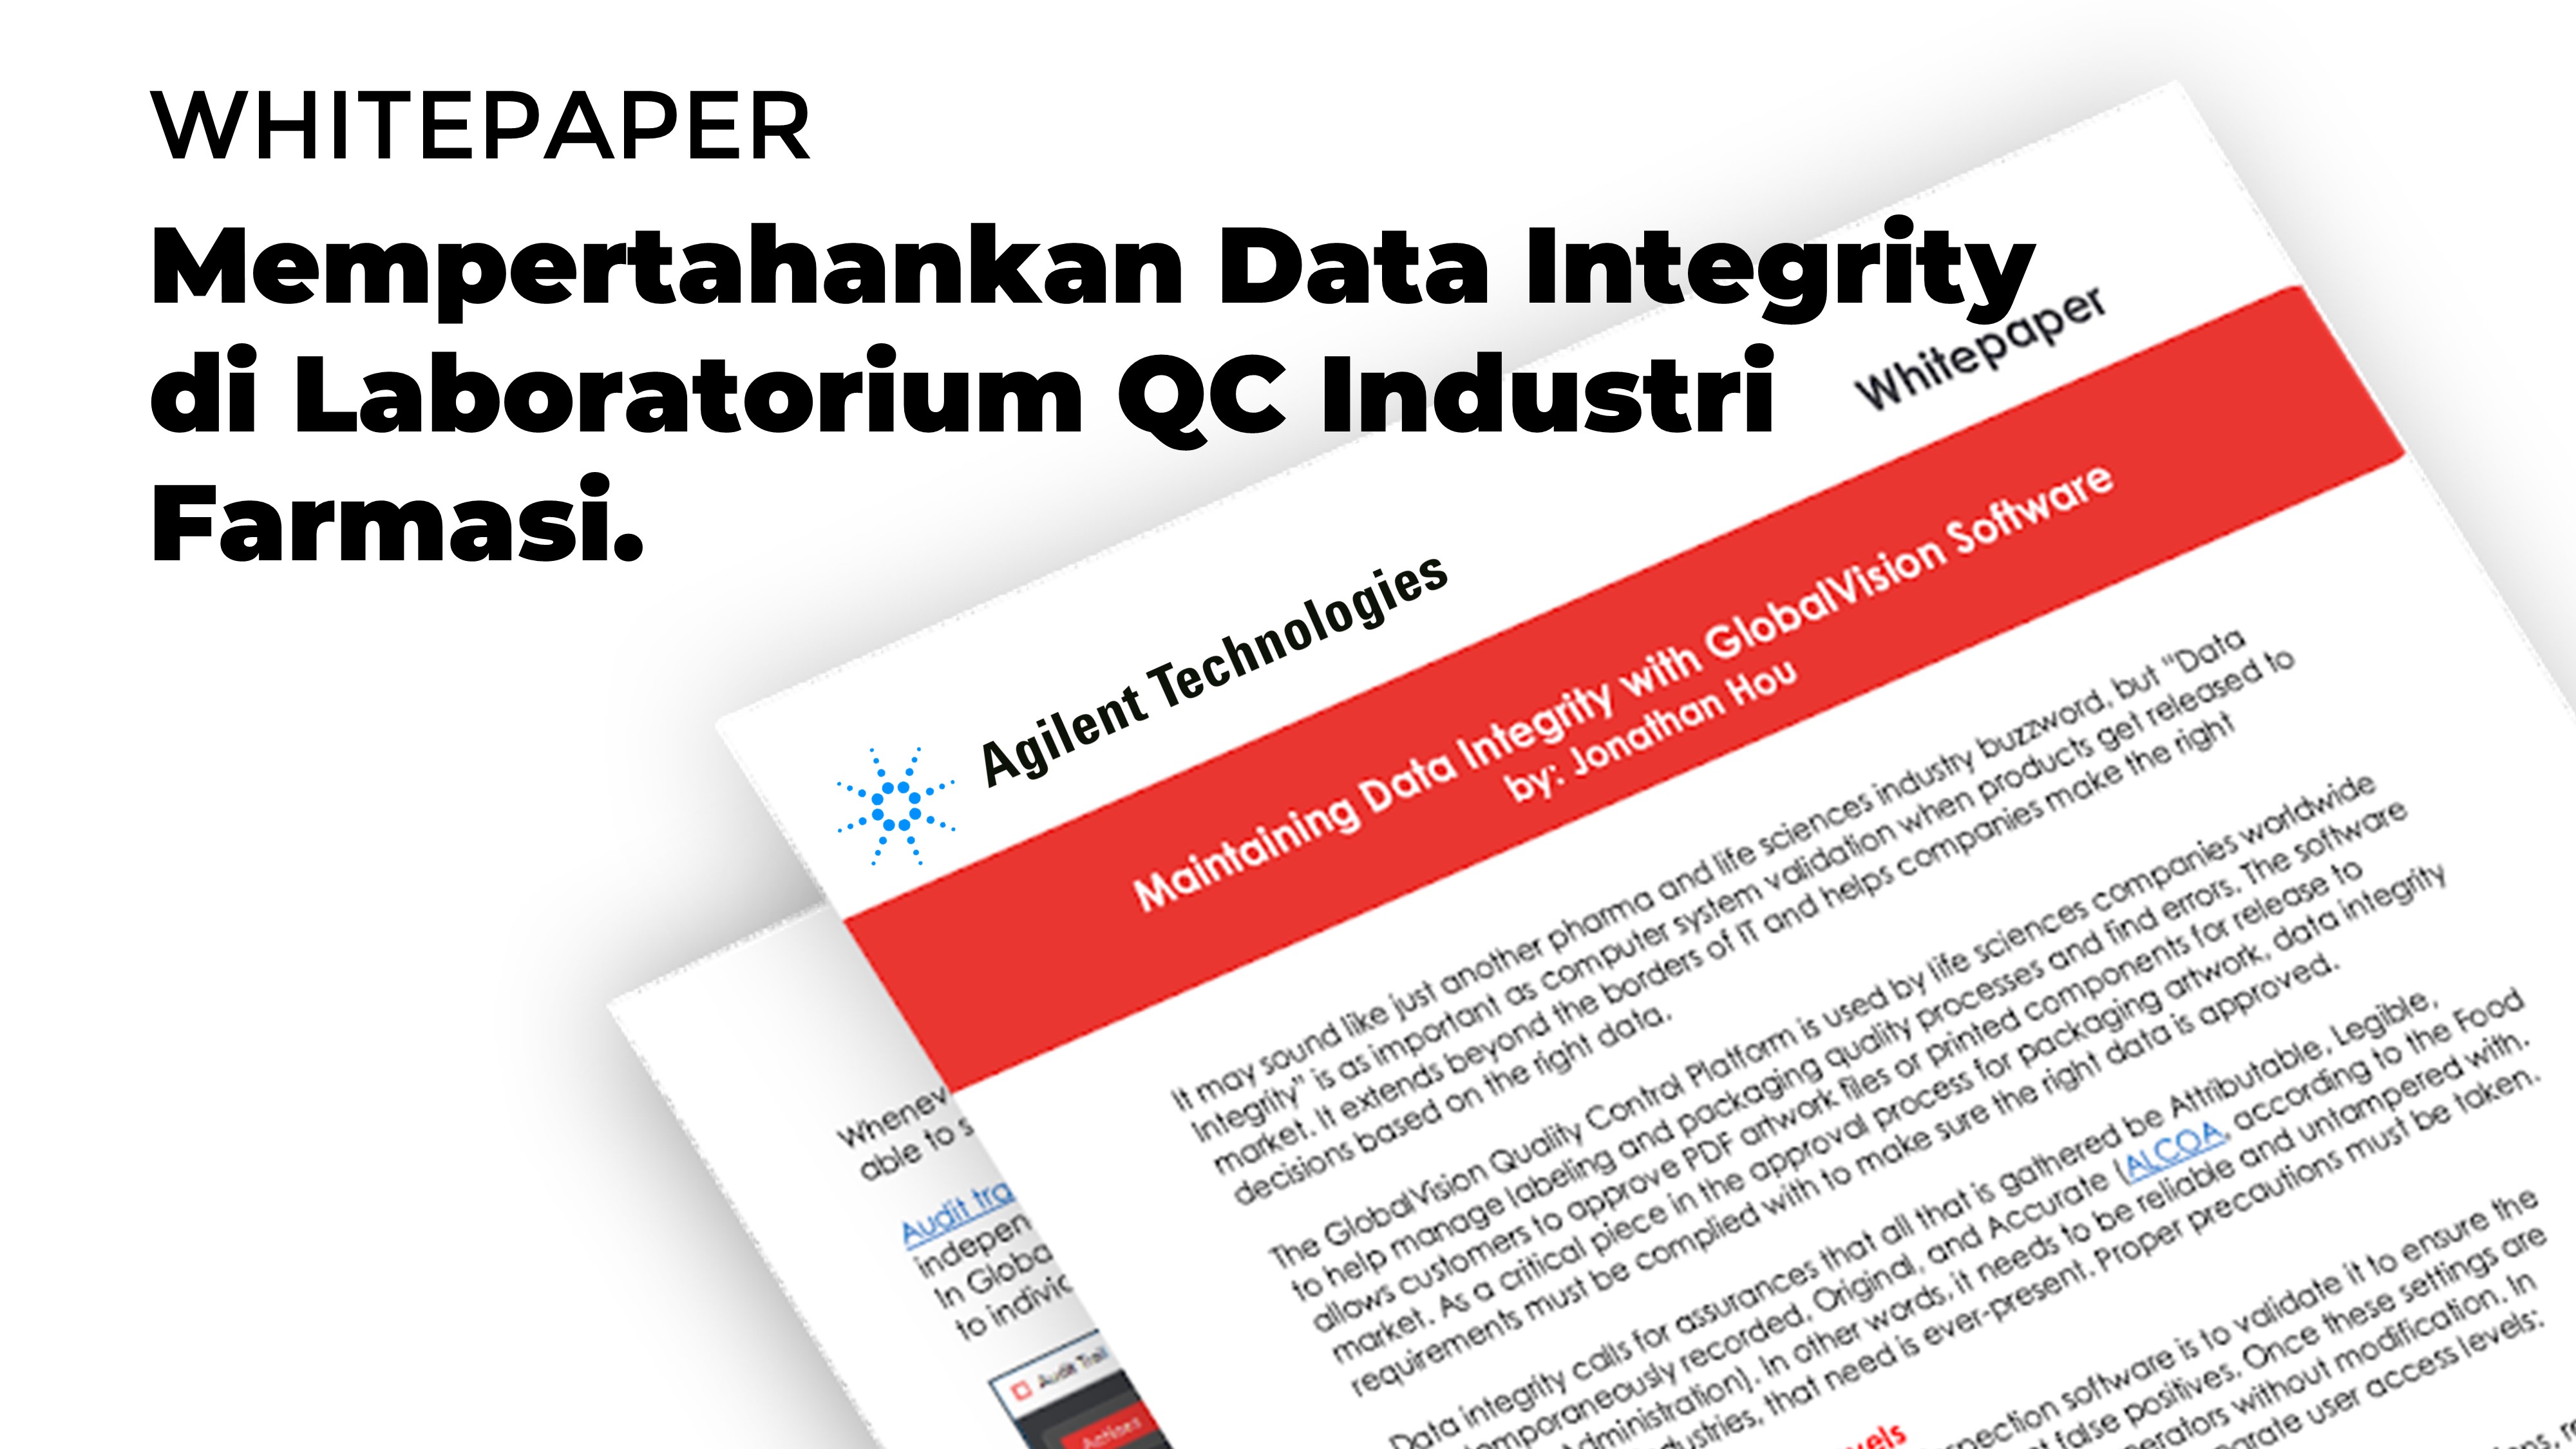 Mempertahankan Data Integrity di Laboratorium QC Industri Farmasi